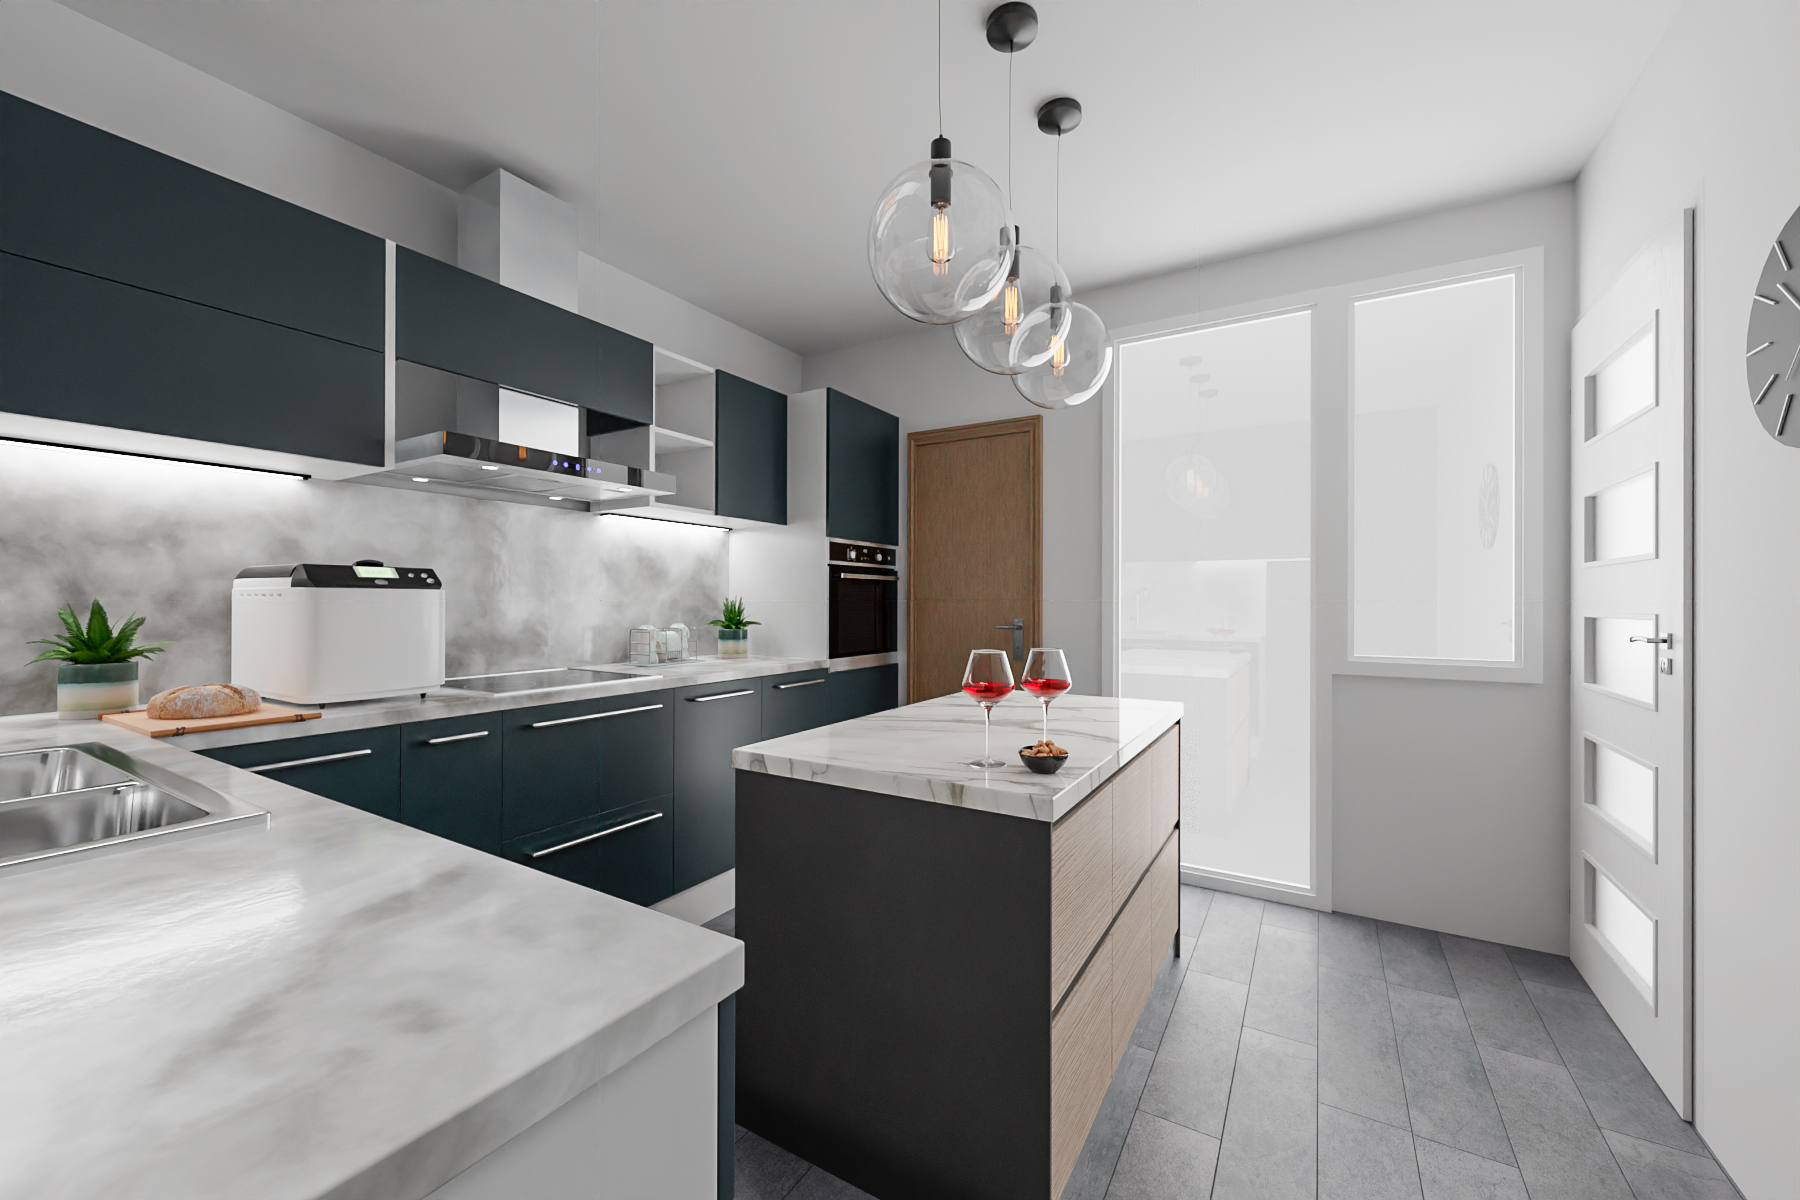 ukázka vizualizace nové kuchyně v bytě před rekonstrukcí